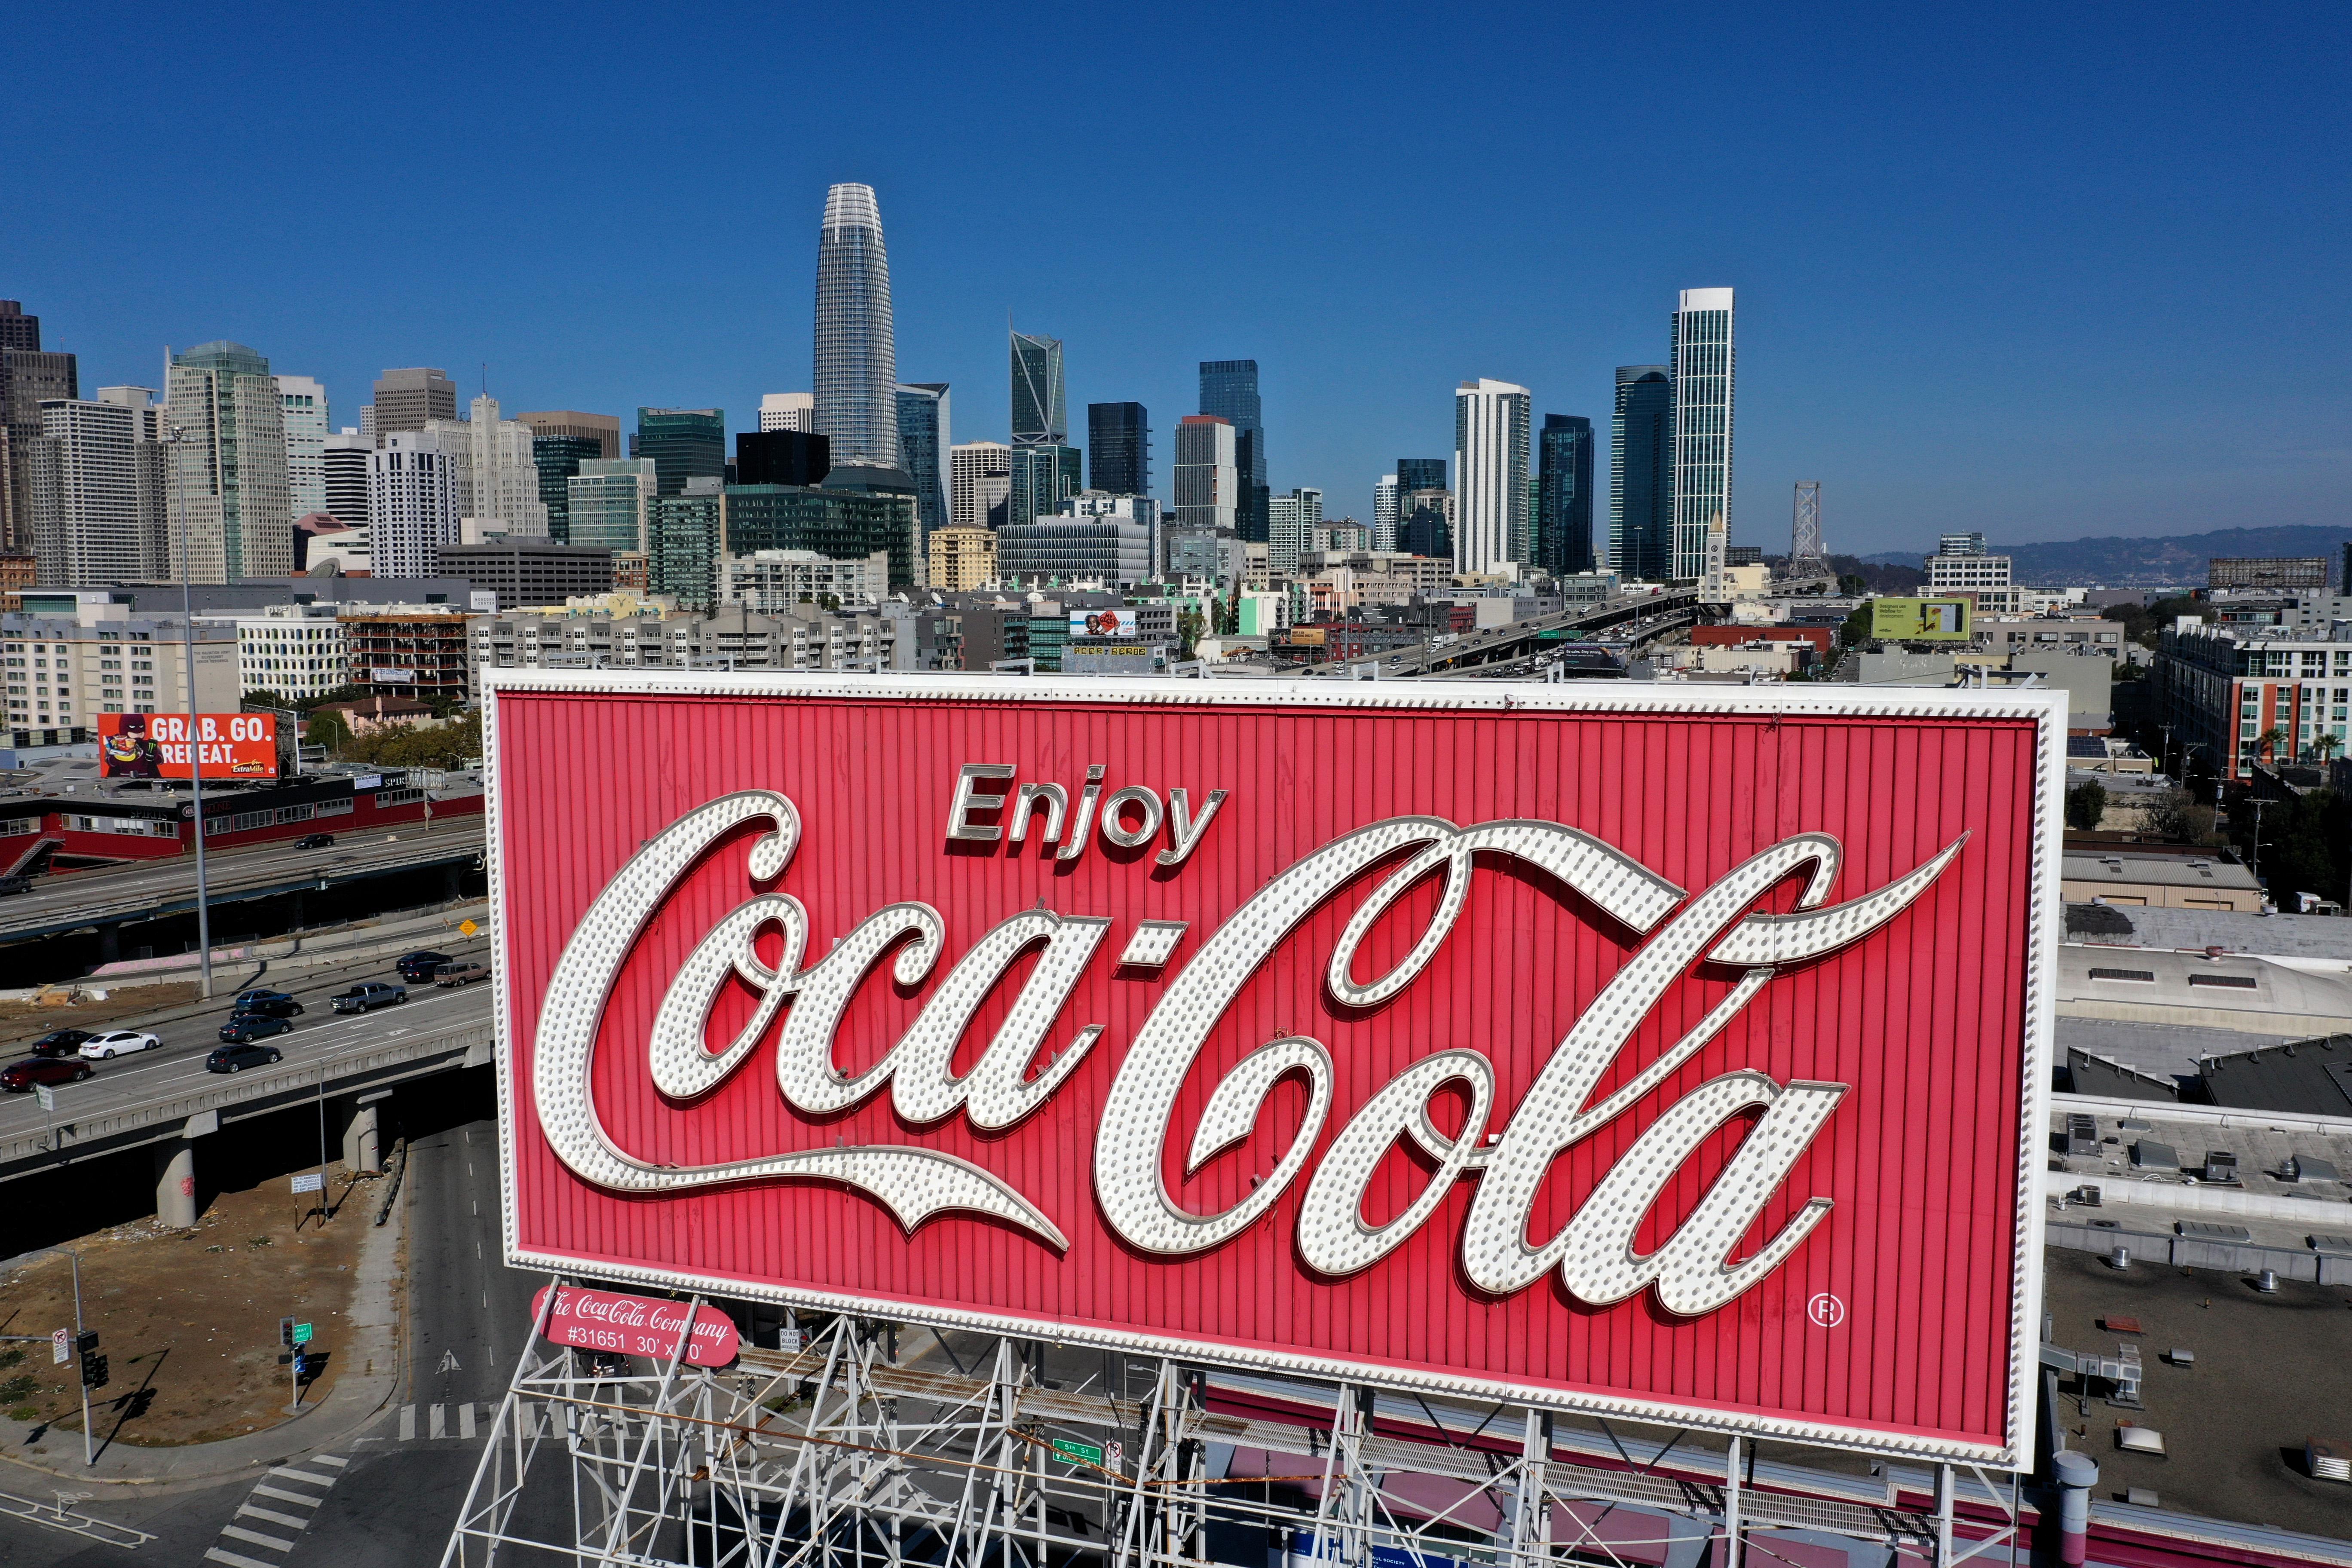 A Coca-Cola billboard in San Francisco. 